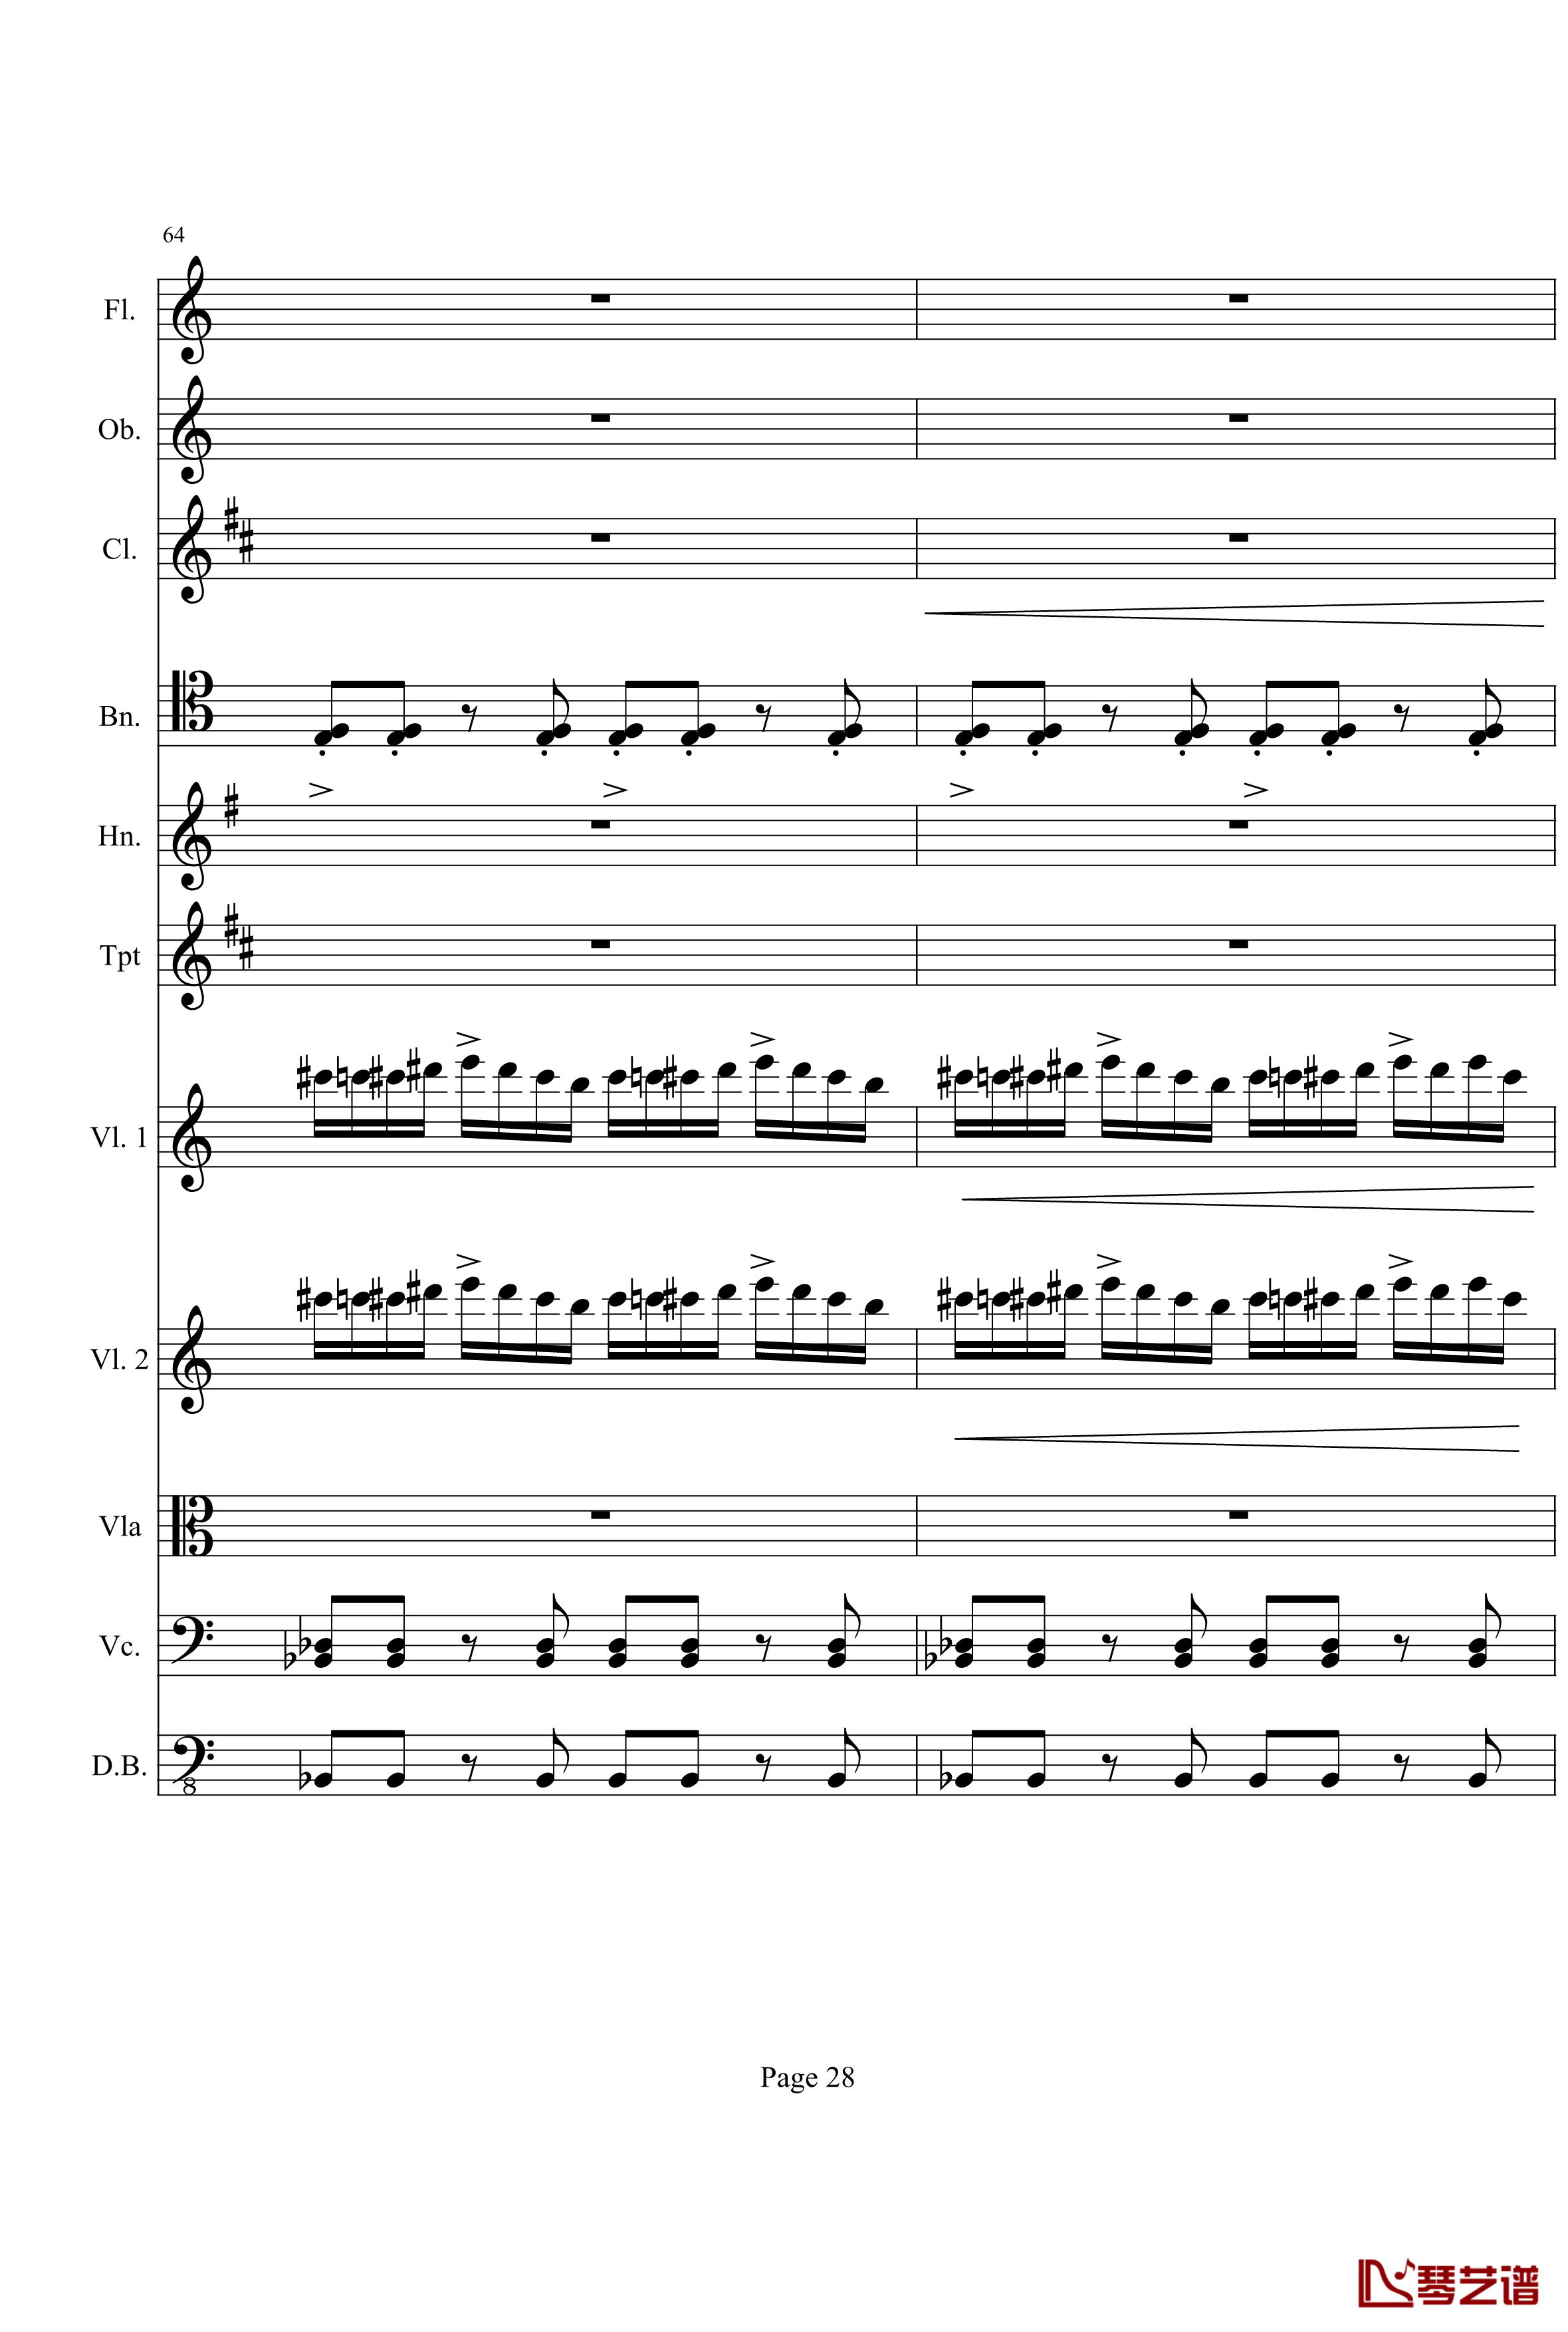 奏鸣曲之交响钢琴谱-第21-Ⅰ-贝多芬-beethoven28